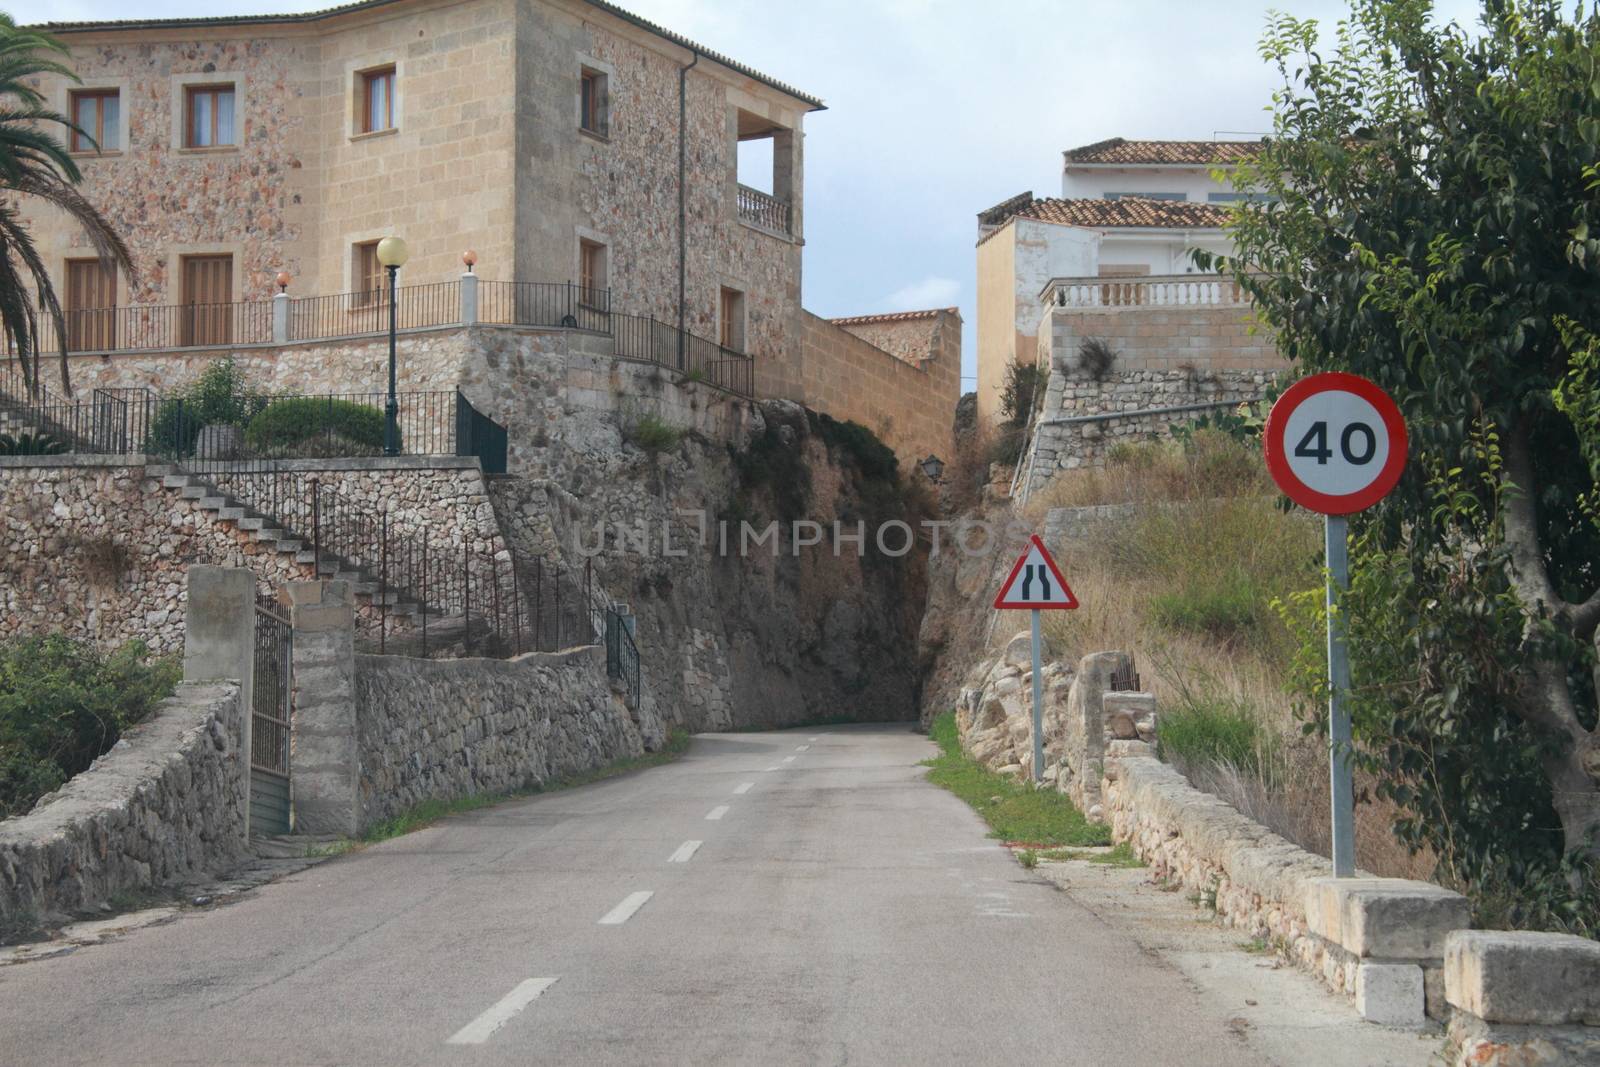 Entrance into Muro Mallorca Spain